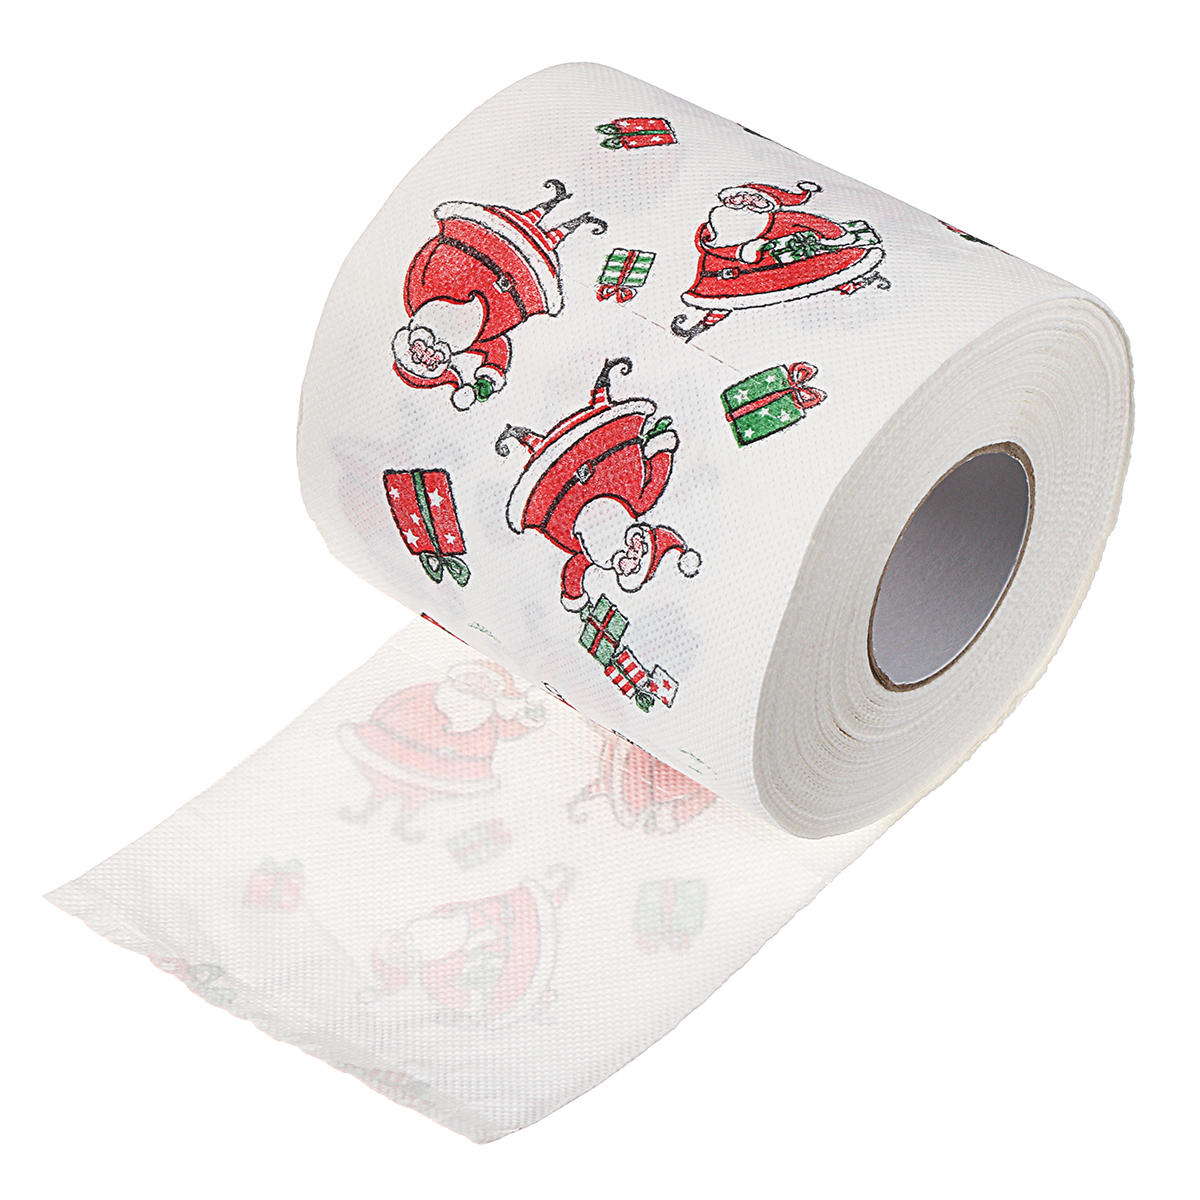 Weihnachtsmann gedruckt Frohe Weihnachten Toilettenpapier Tissue Table Room Decor Ornament Crafts Dekorationen